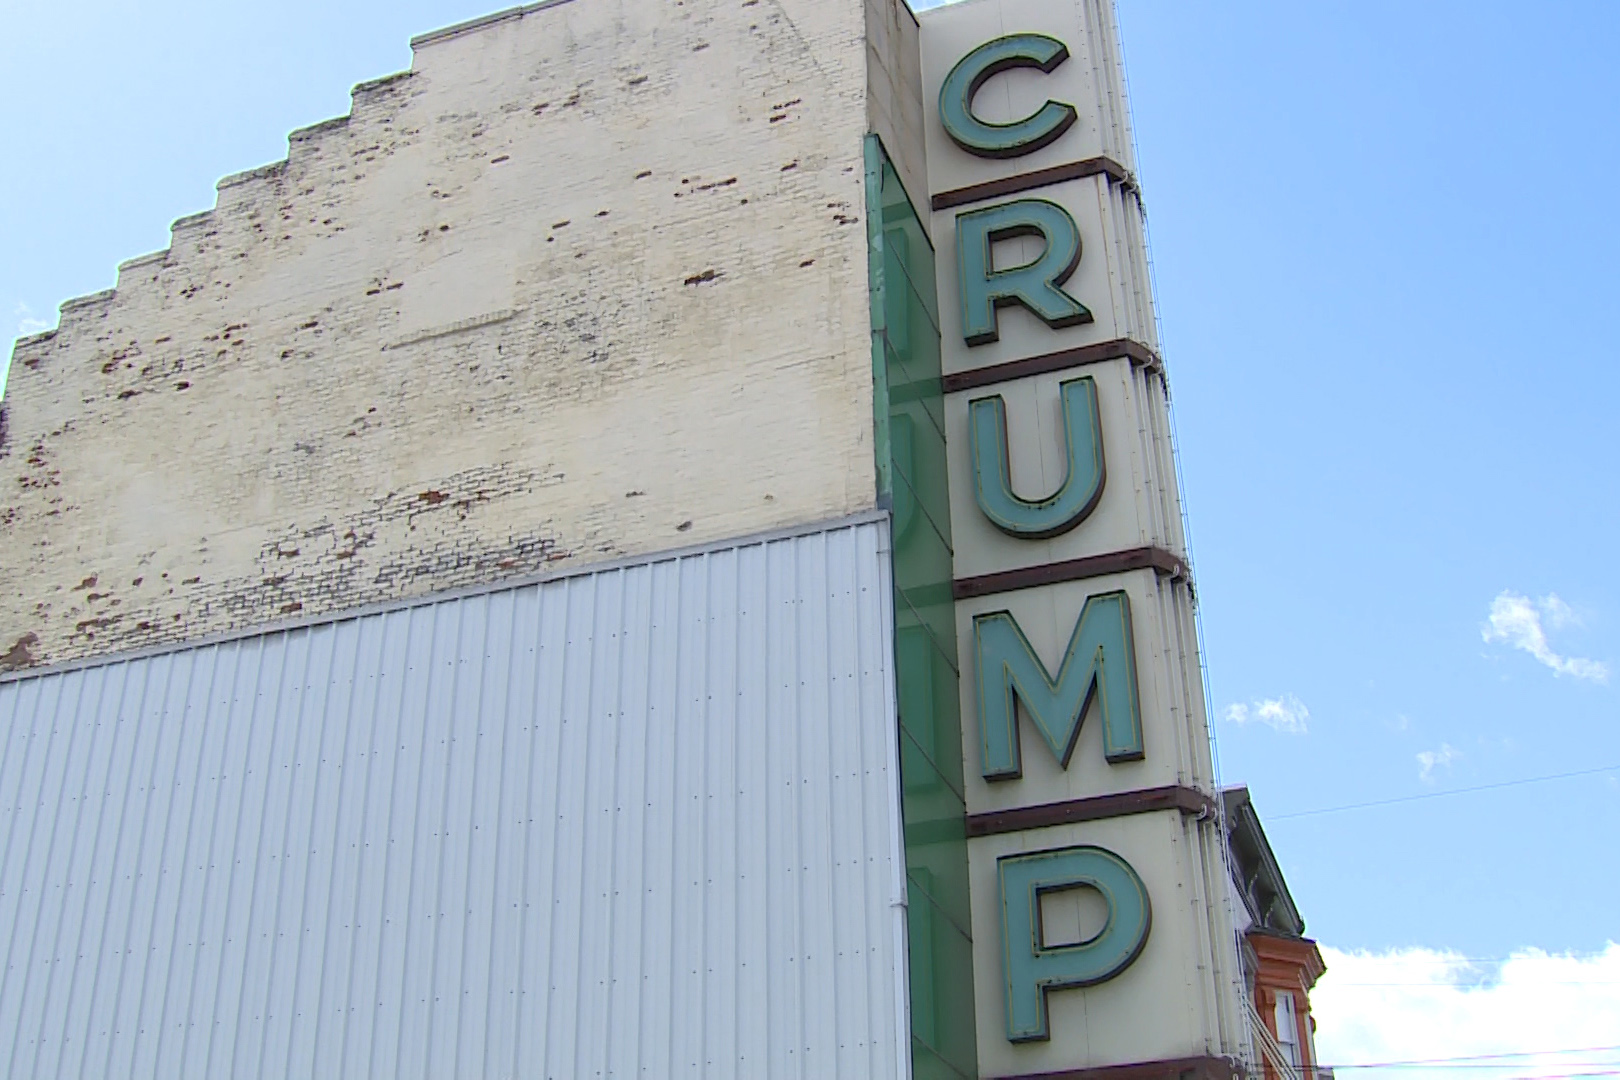 The Crump Theatre in Columbus